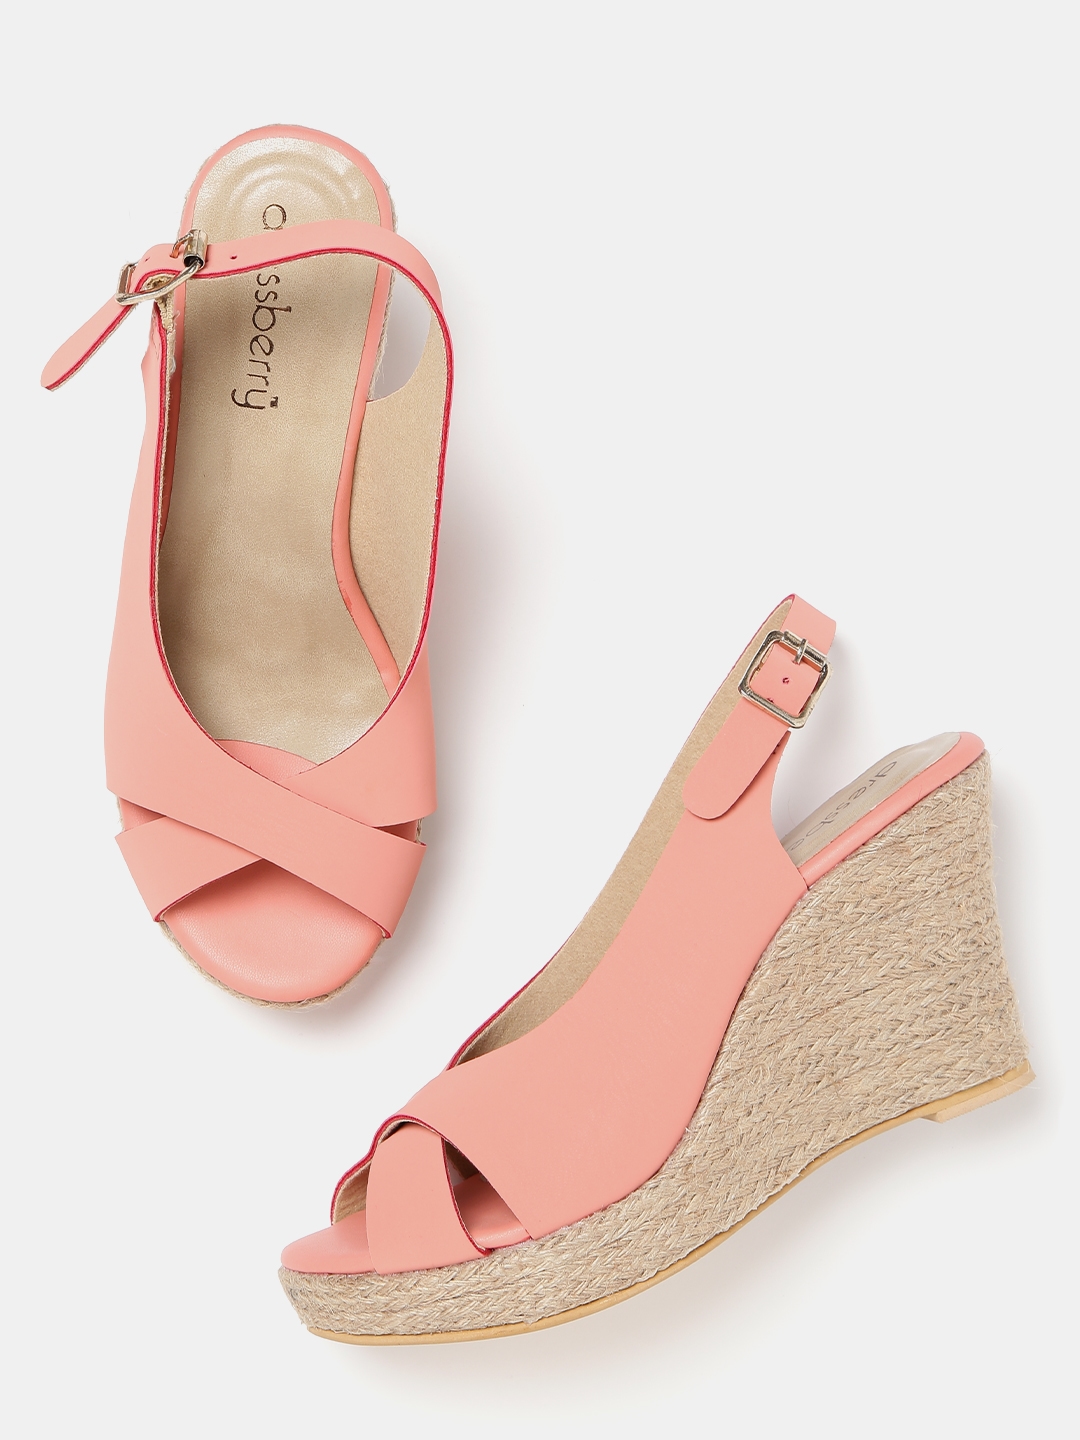 peach colour sandals